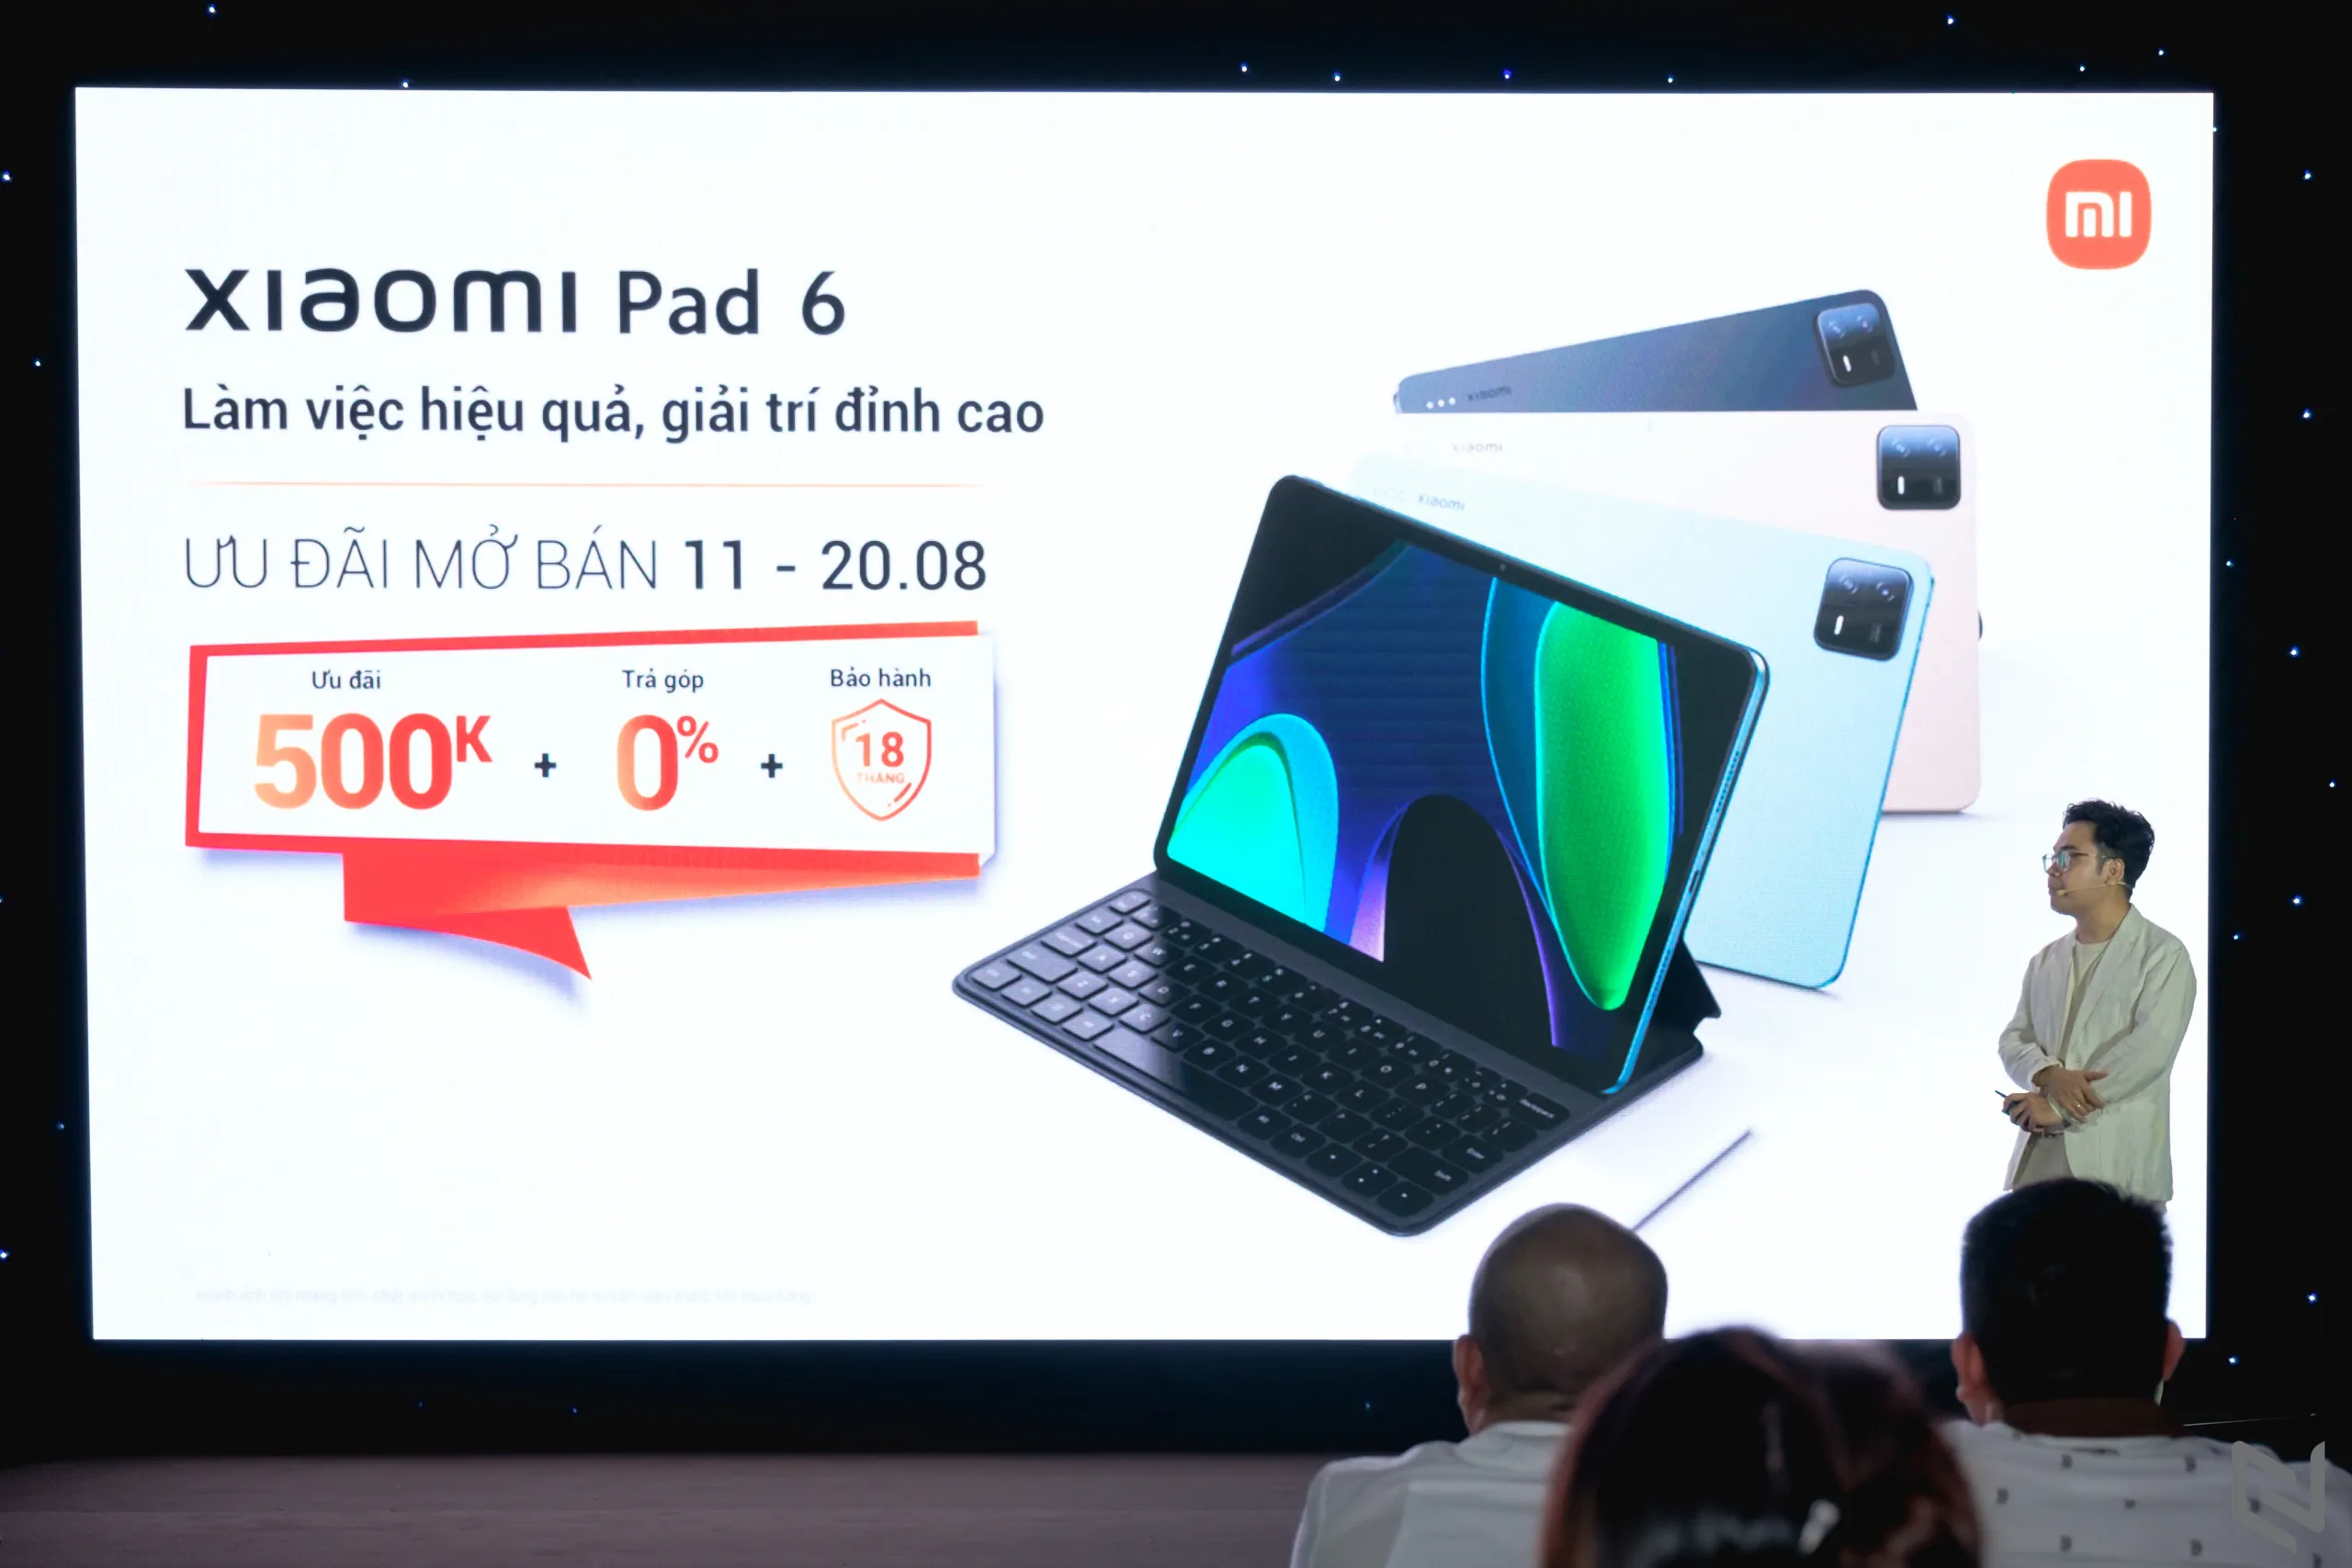 Xiaomi Pad 6 ra mắt tại Việt Nam với giá hấp dẫn, chỉ từ 9.49 triệu đồng